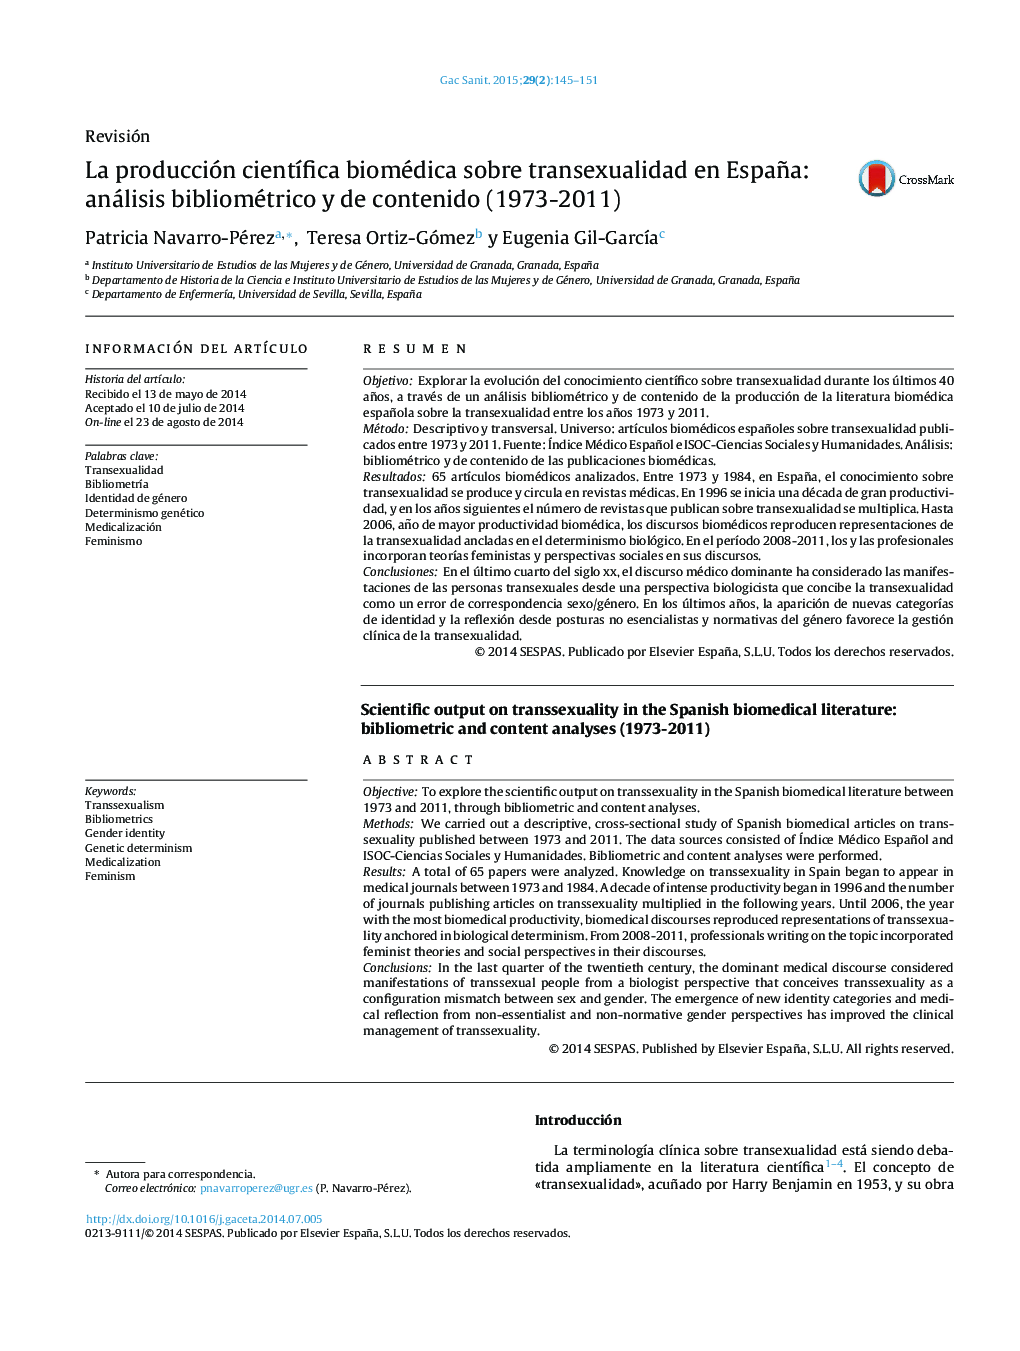 La producción científica biomédica sobre transexualidad en España: análisis bibliométrico y de contenido (1973-2011)